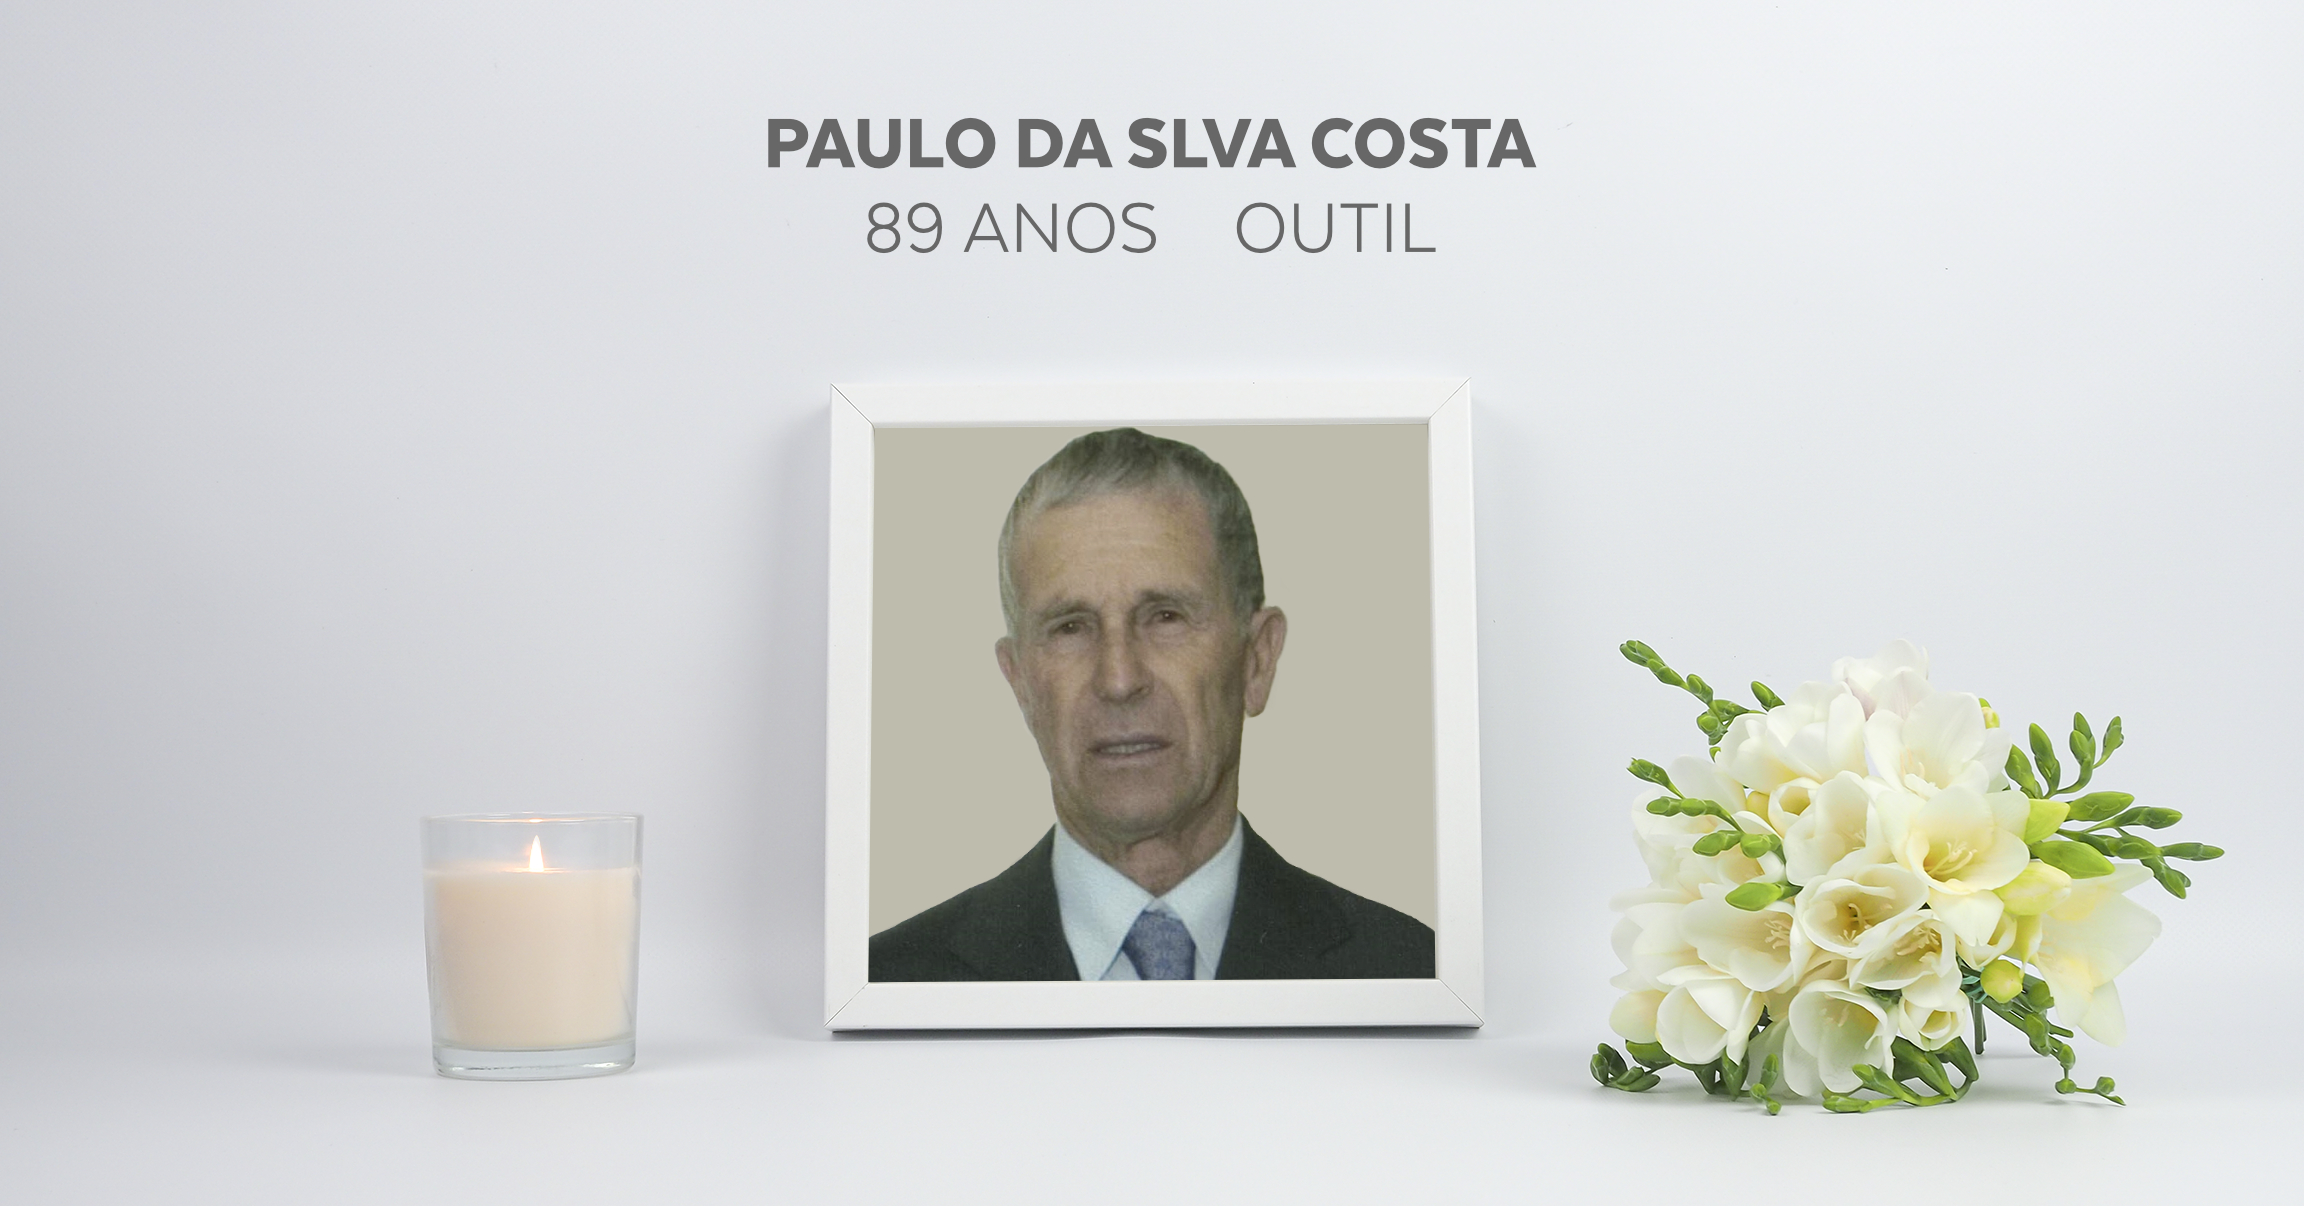 Paulo da Silva Costa